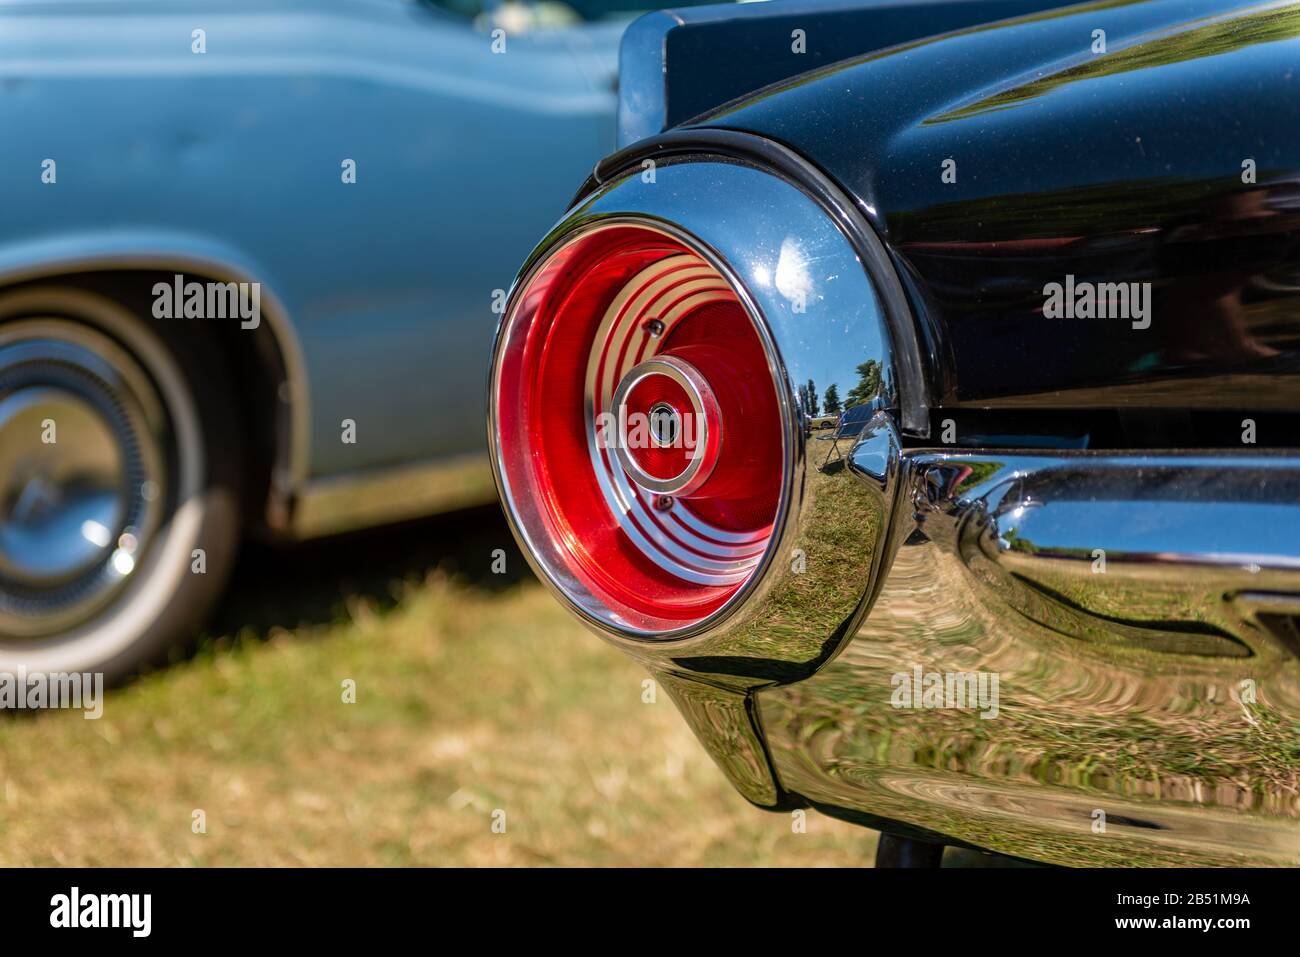 Feu arrière rond entouré de chrome au Rallye of the Giants, spectacle automobile américain classique, dans le domaine de Blenheim Palace, Woodstock près d'Oxford. Banque D'Images